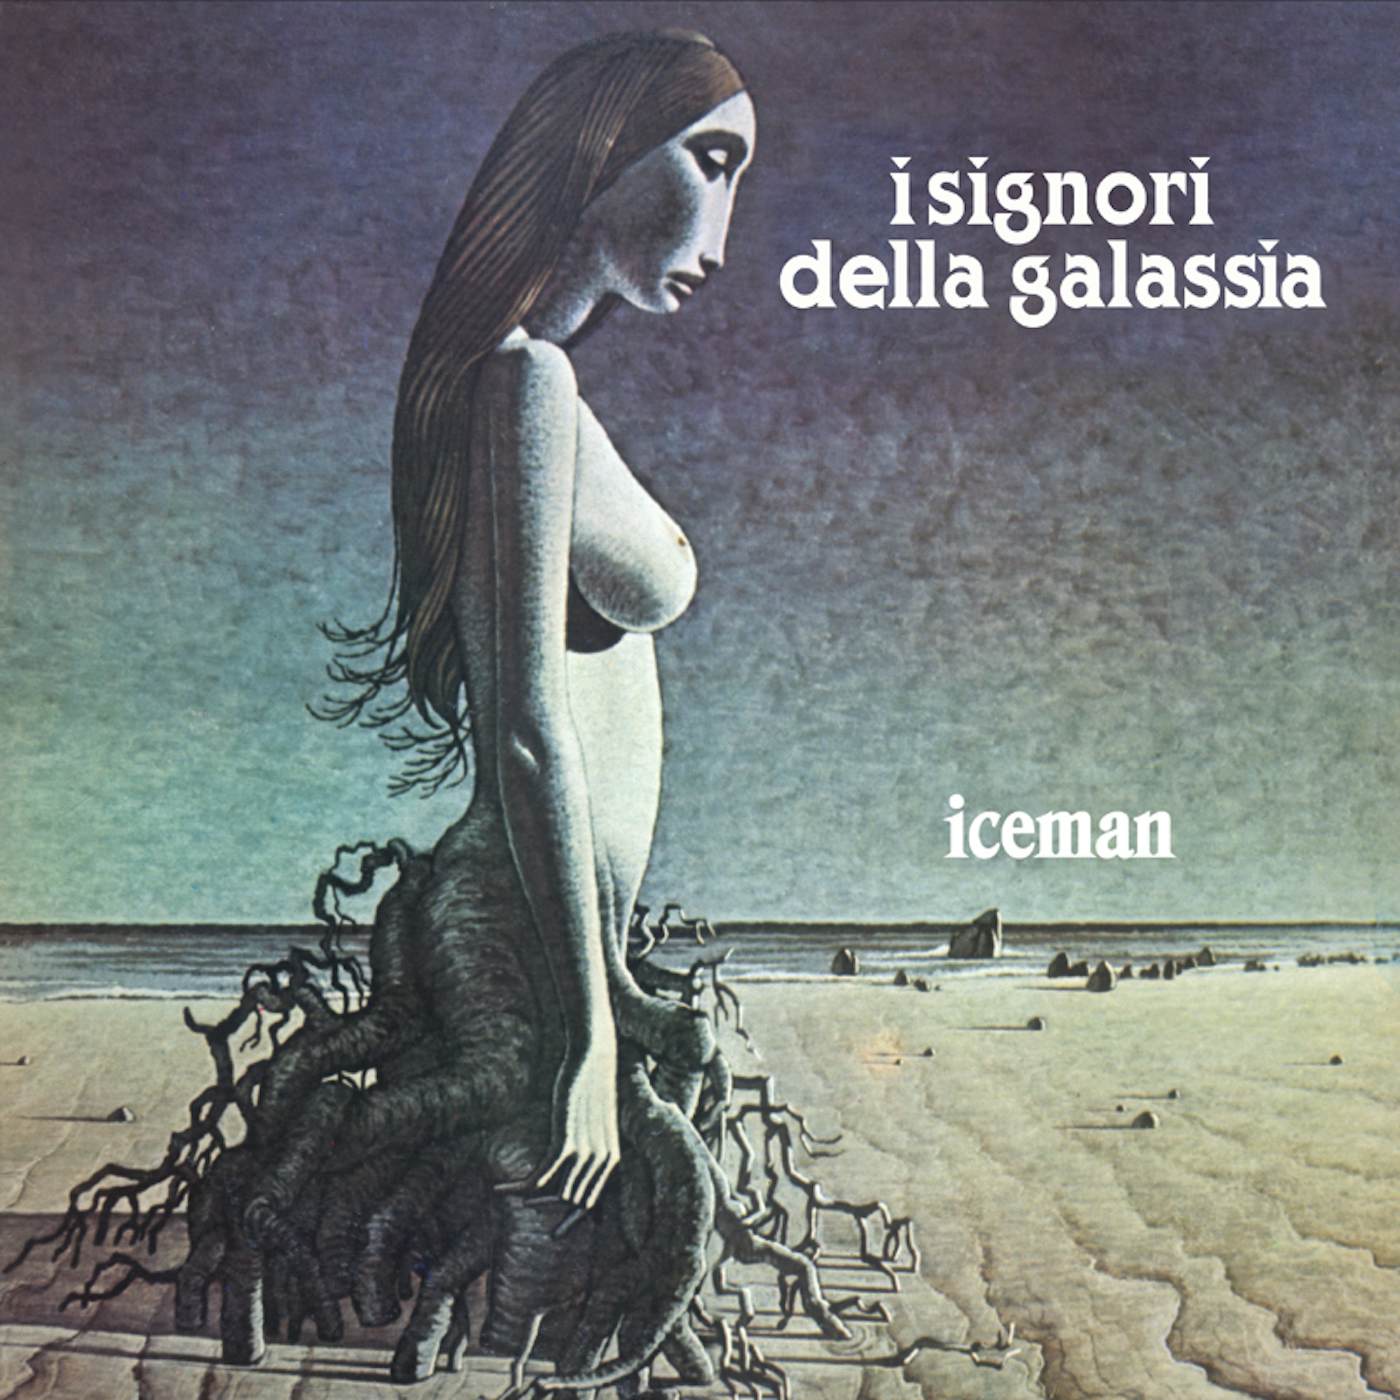 Signori Della Galassia Iceman Vinyl Record